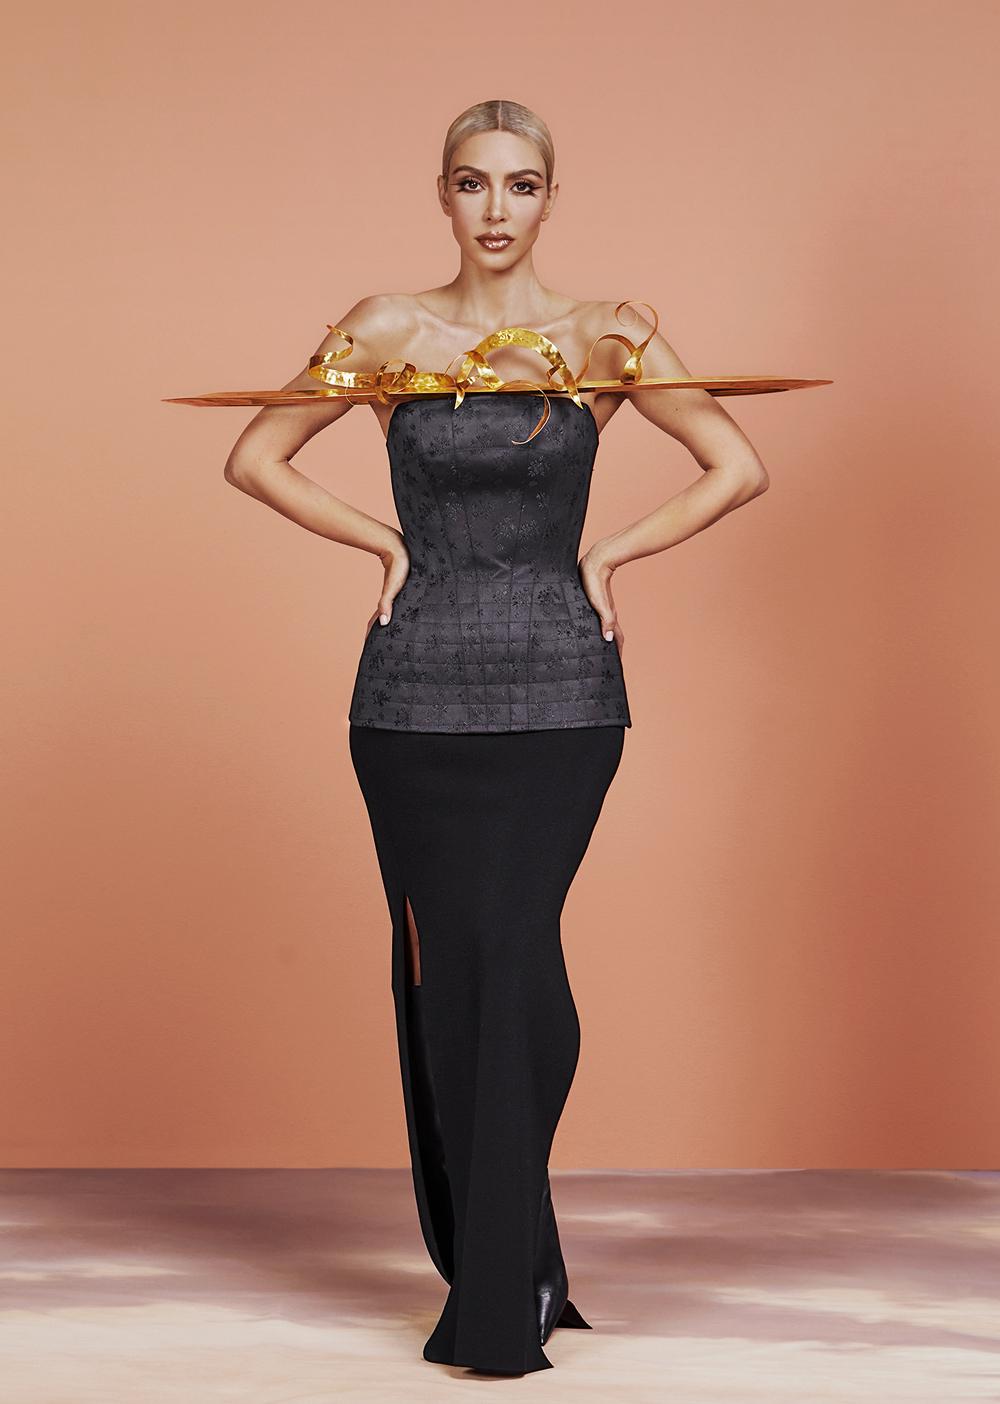 Изменившаяся до неузнаваемости, Ким Кардашьян демонстрирует сексуальные наряды для журнала Allure US